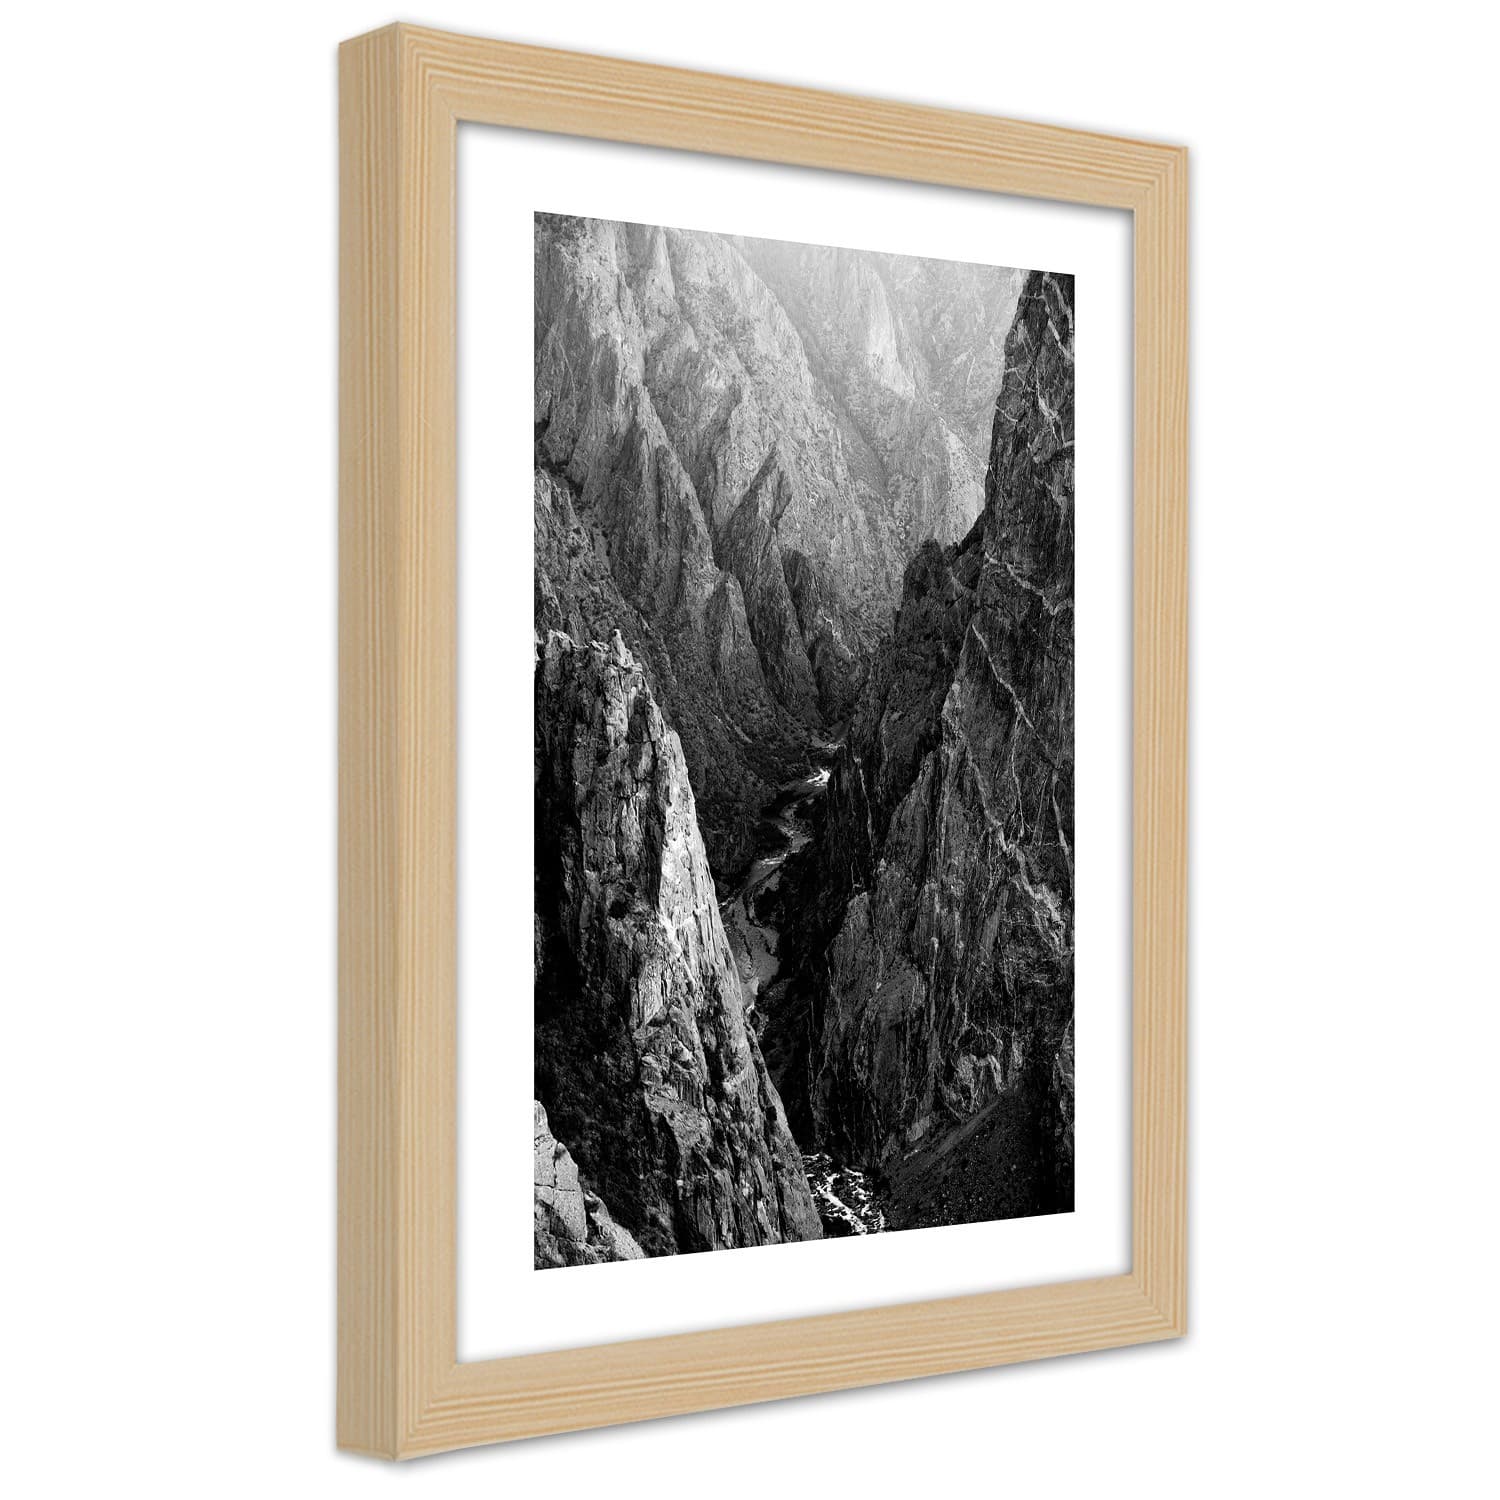 Plakat w ramie naturalnej, Czarno-biały krajobraz górski (Rozmiar 60x90)